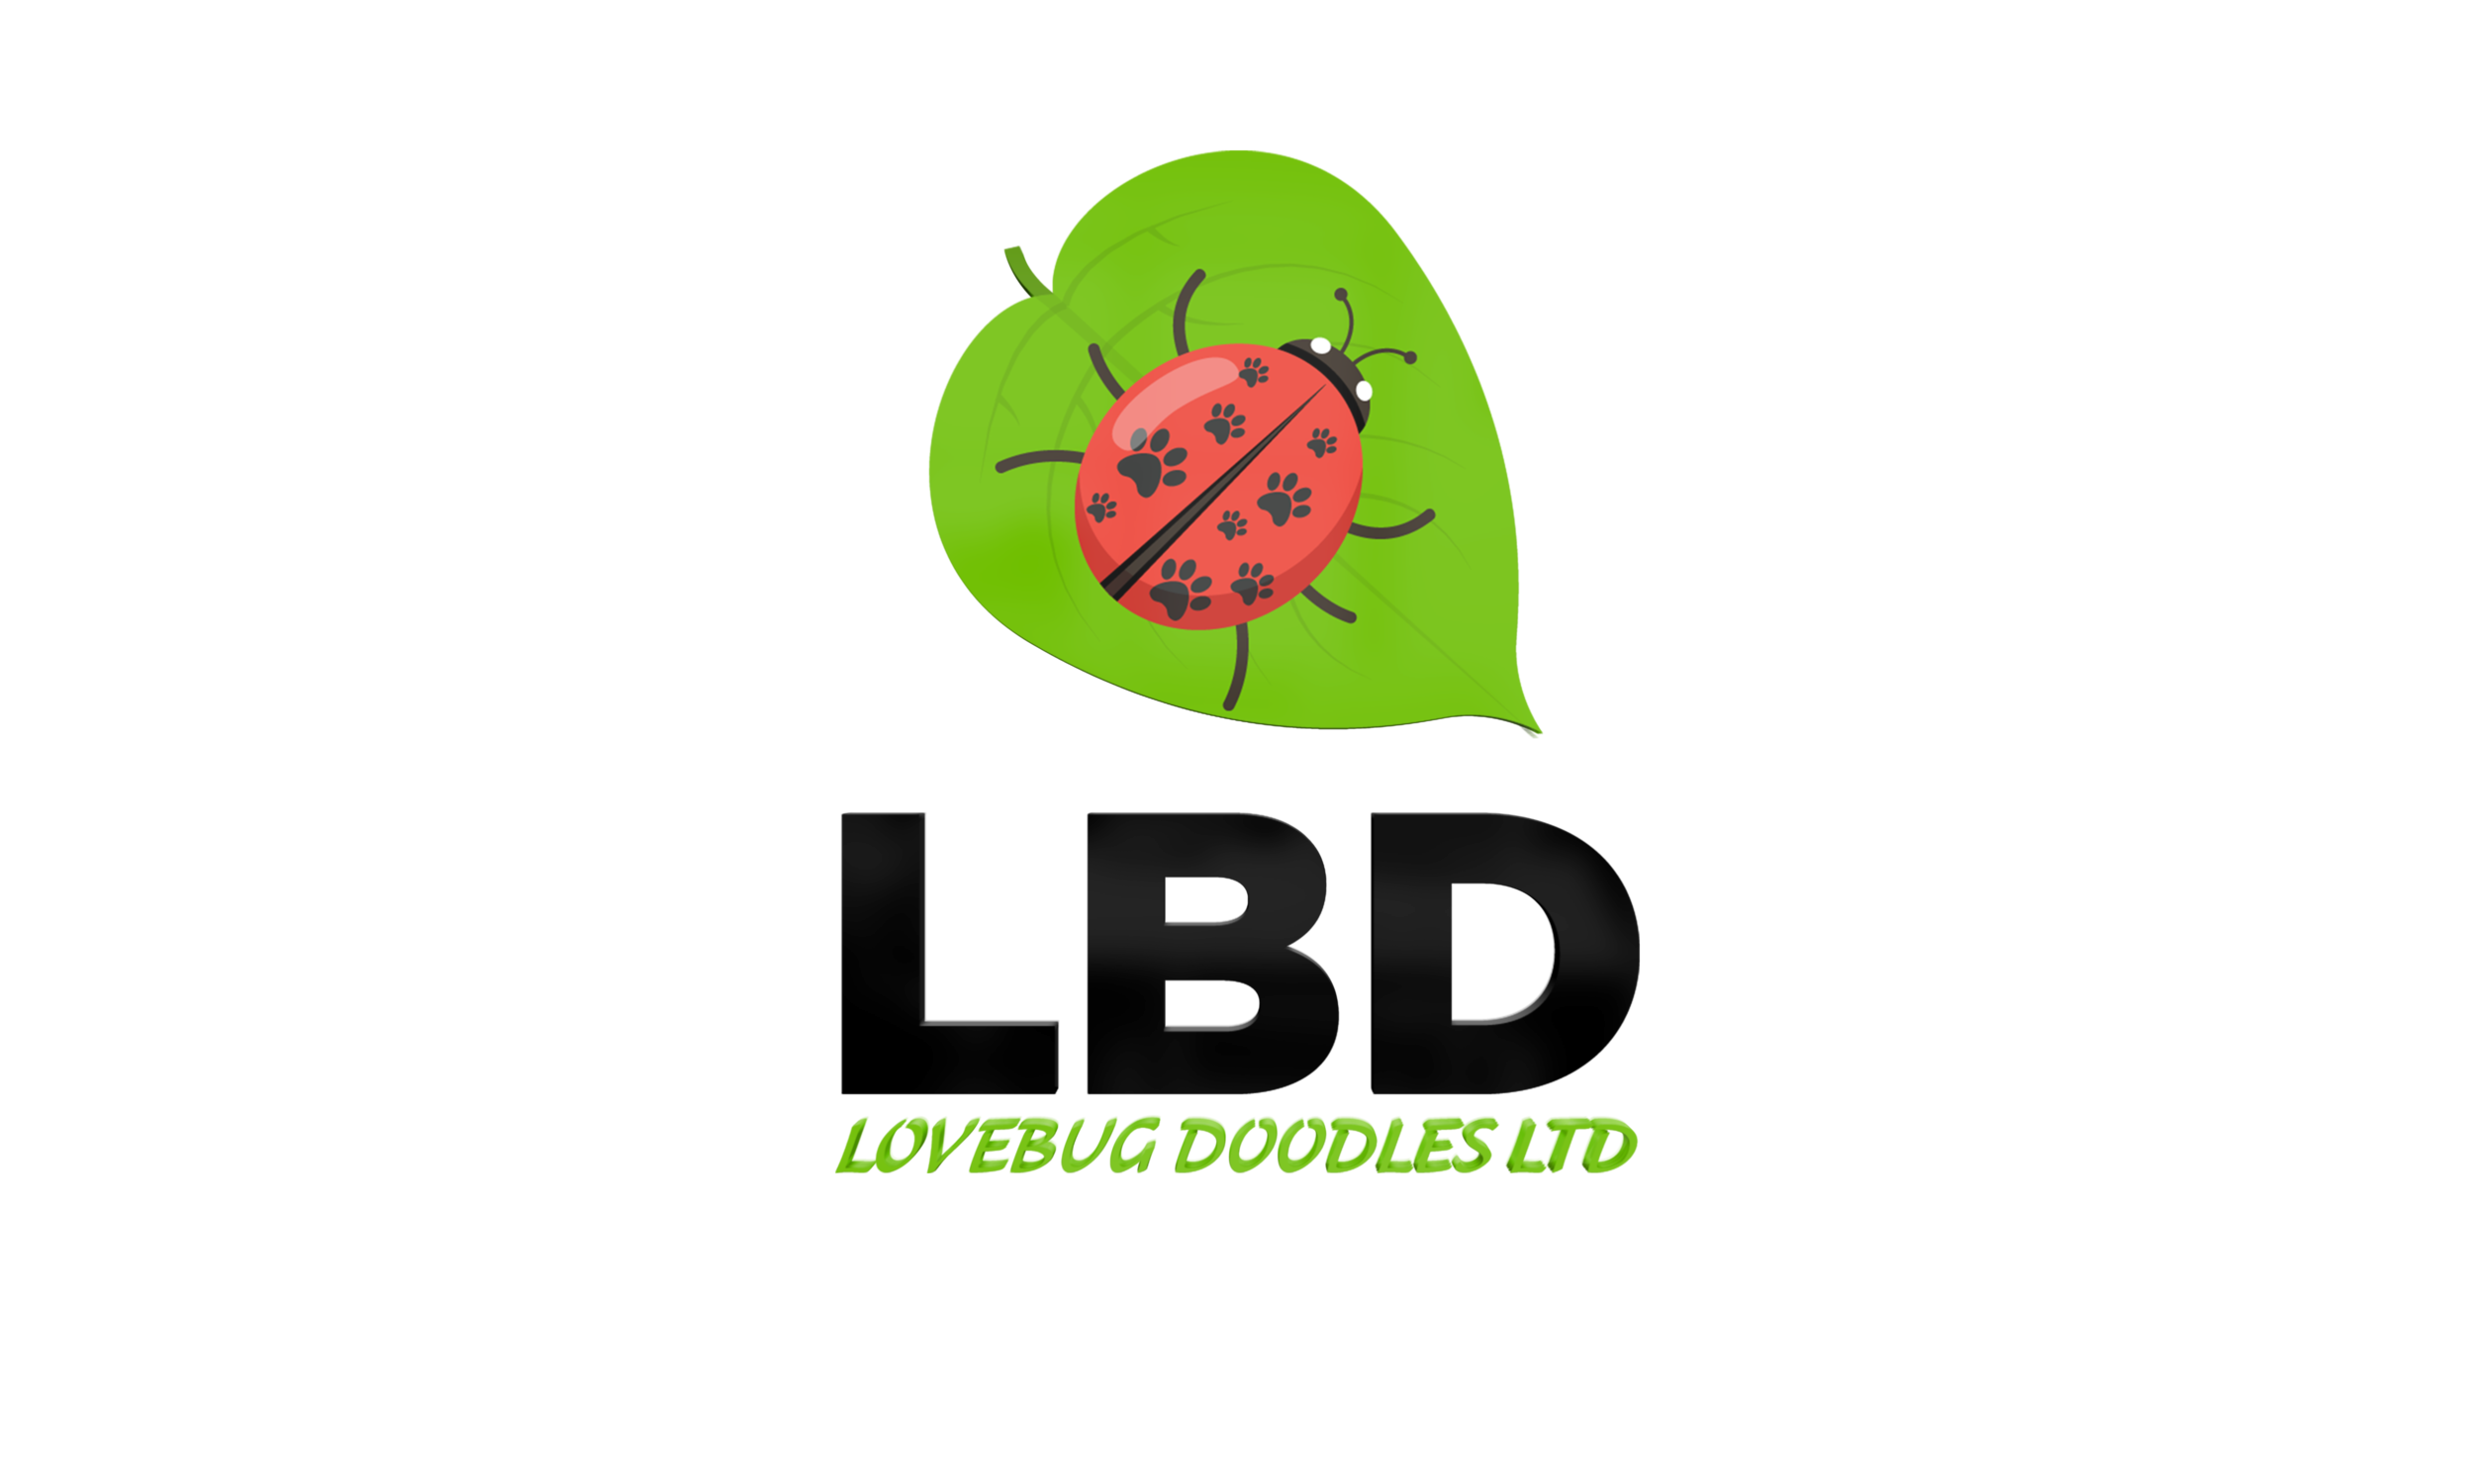 Lovebug Doodles